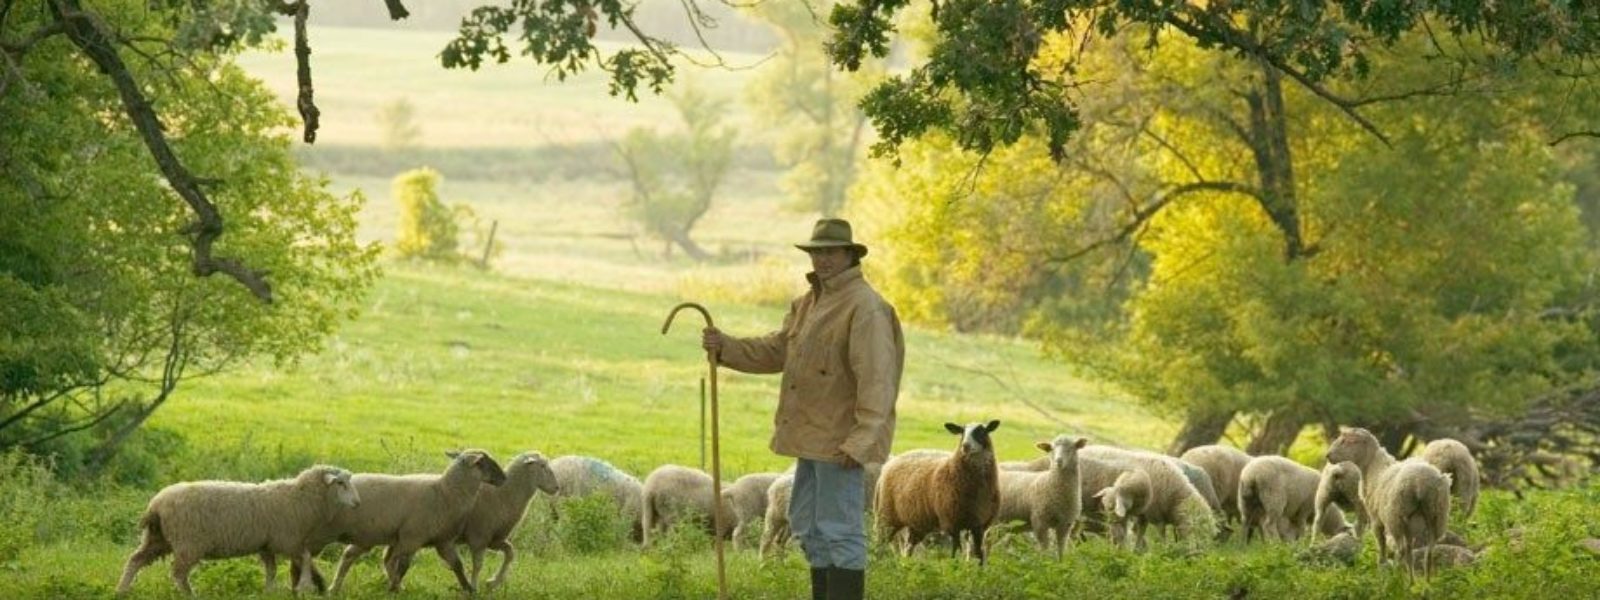 the way of the shepherd